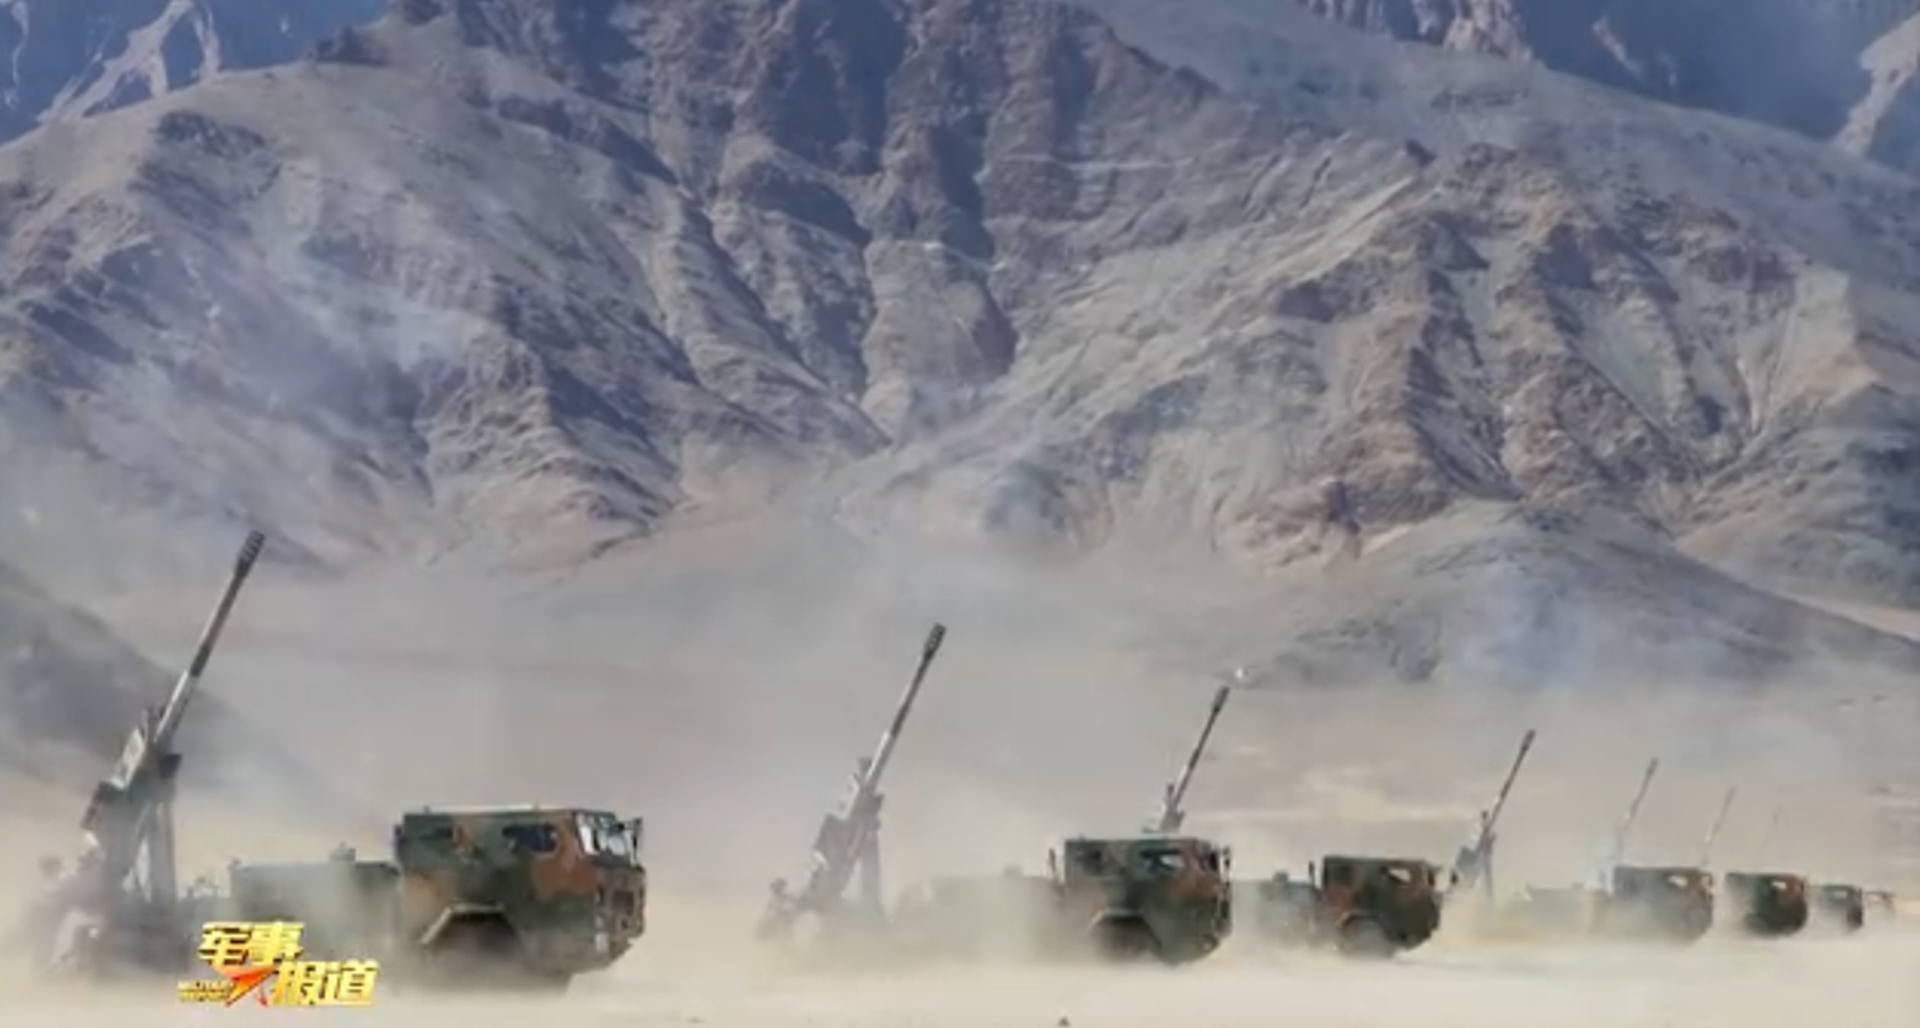 新疆军区新型车载榴弹炮齐射。（中国央视《军事报道》节目视频截图）